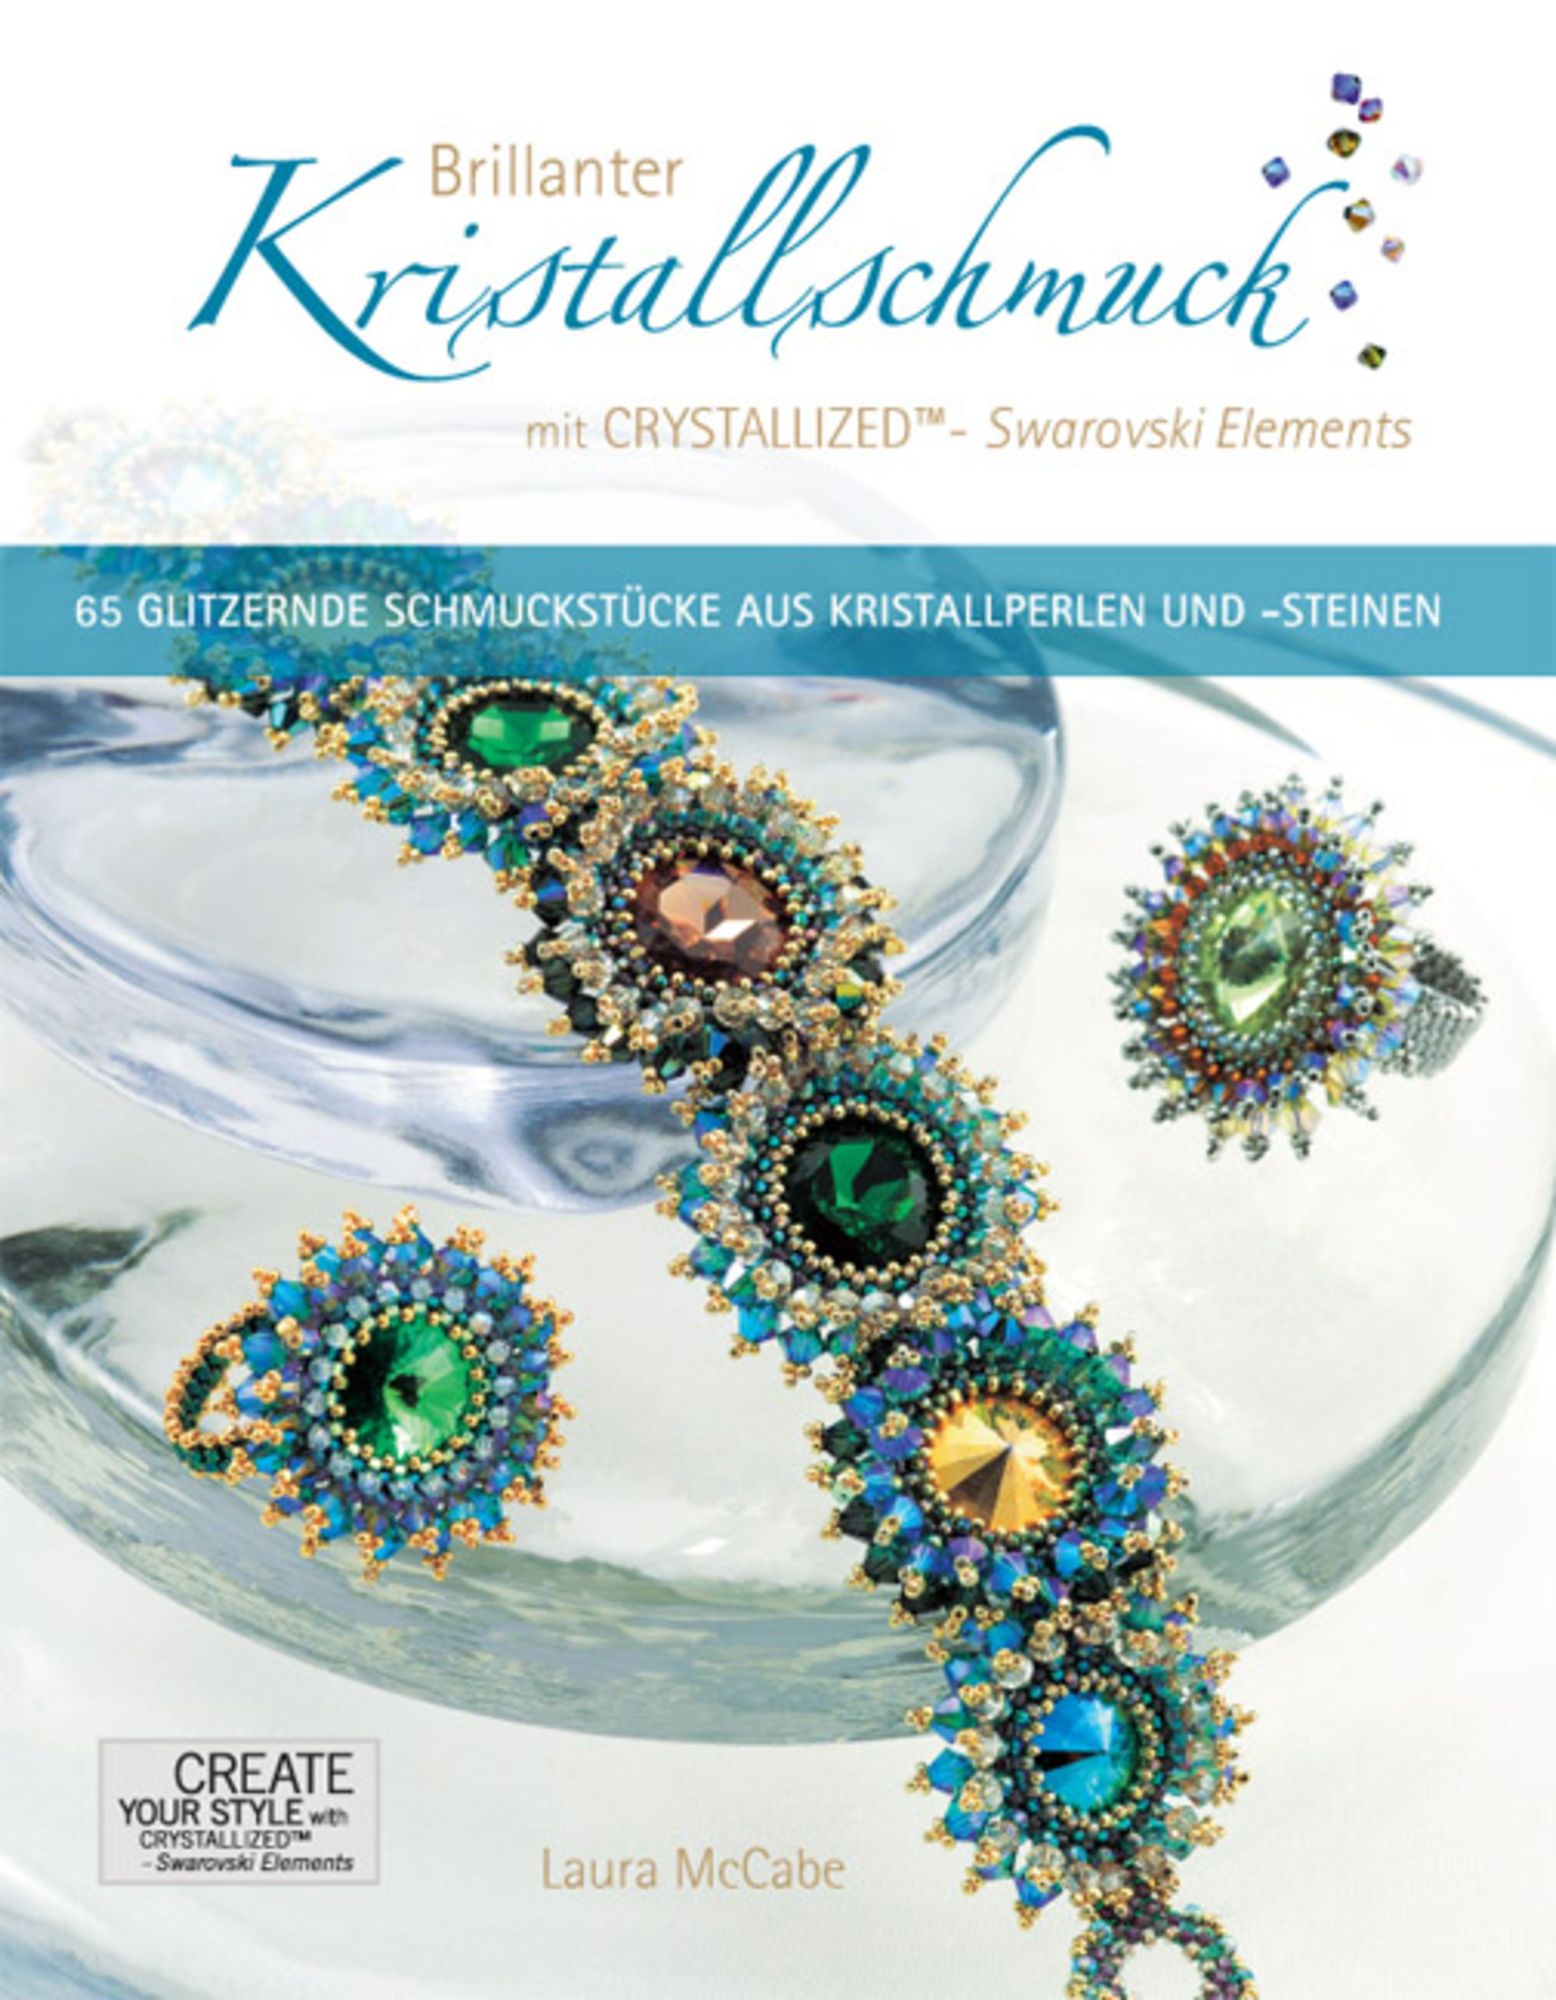 Brillanter Kristallschmuck - \'Laura McCabe\' Swarovski mit Buch von CRYSTALLIZED™ - \'978-3-940577-00-9\' Elements\' 